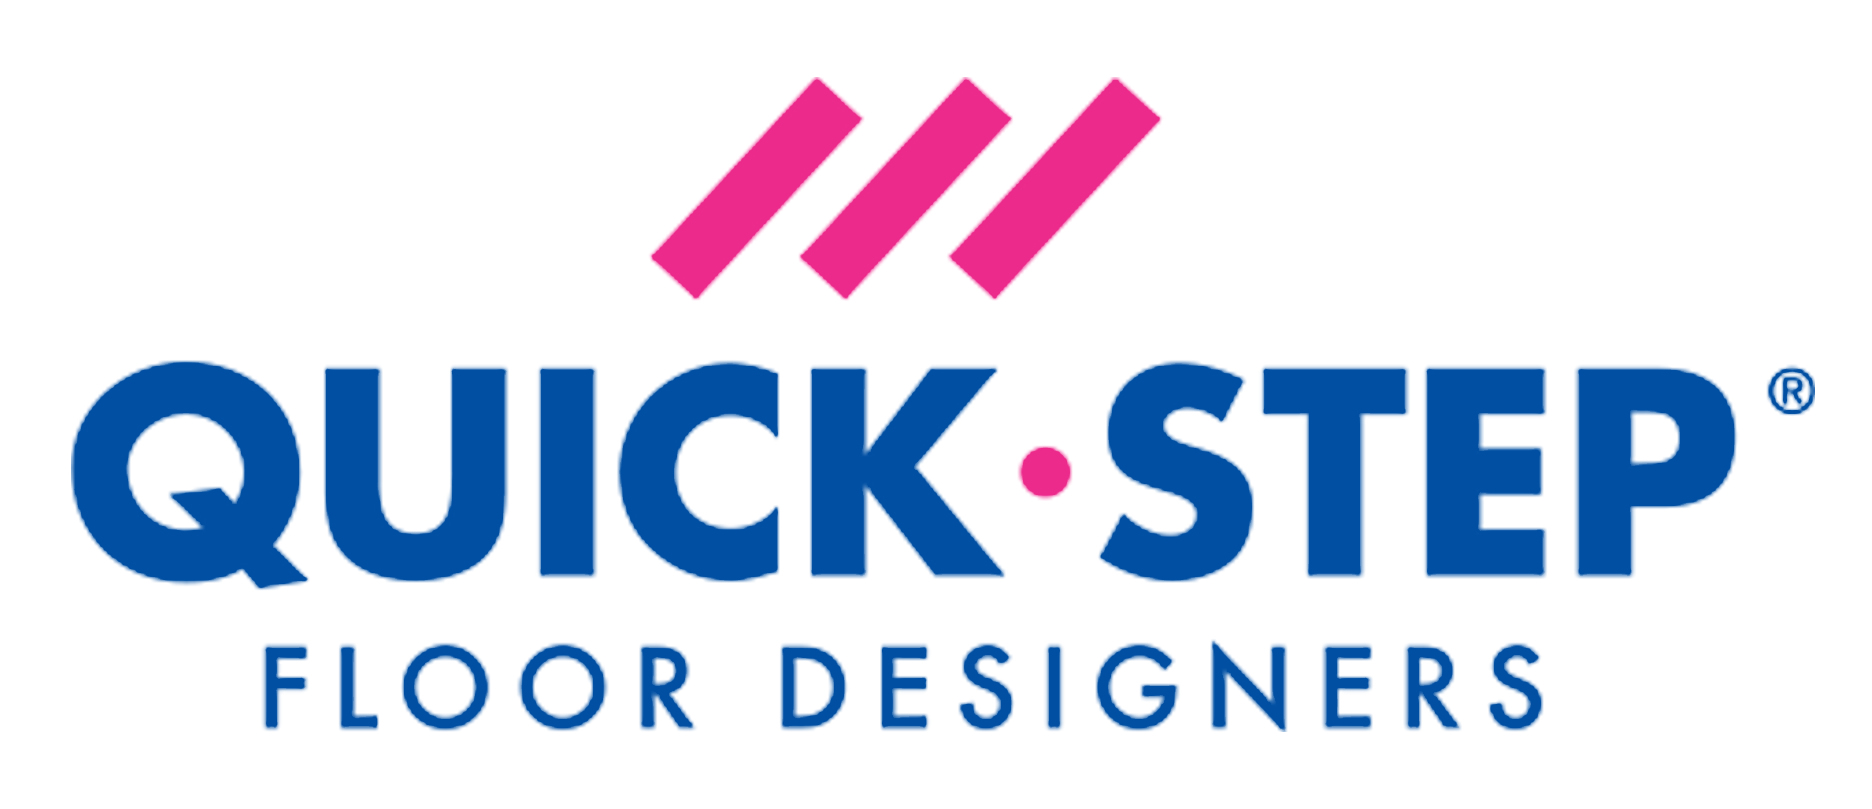 logo Quick step floor designers